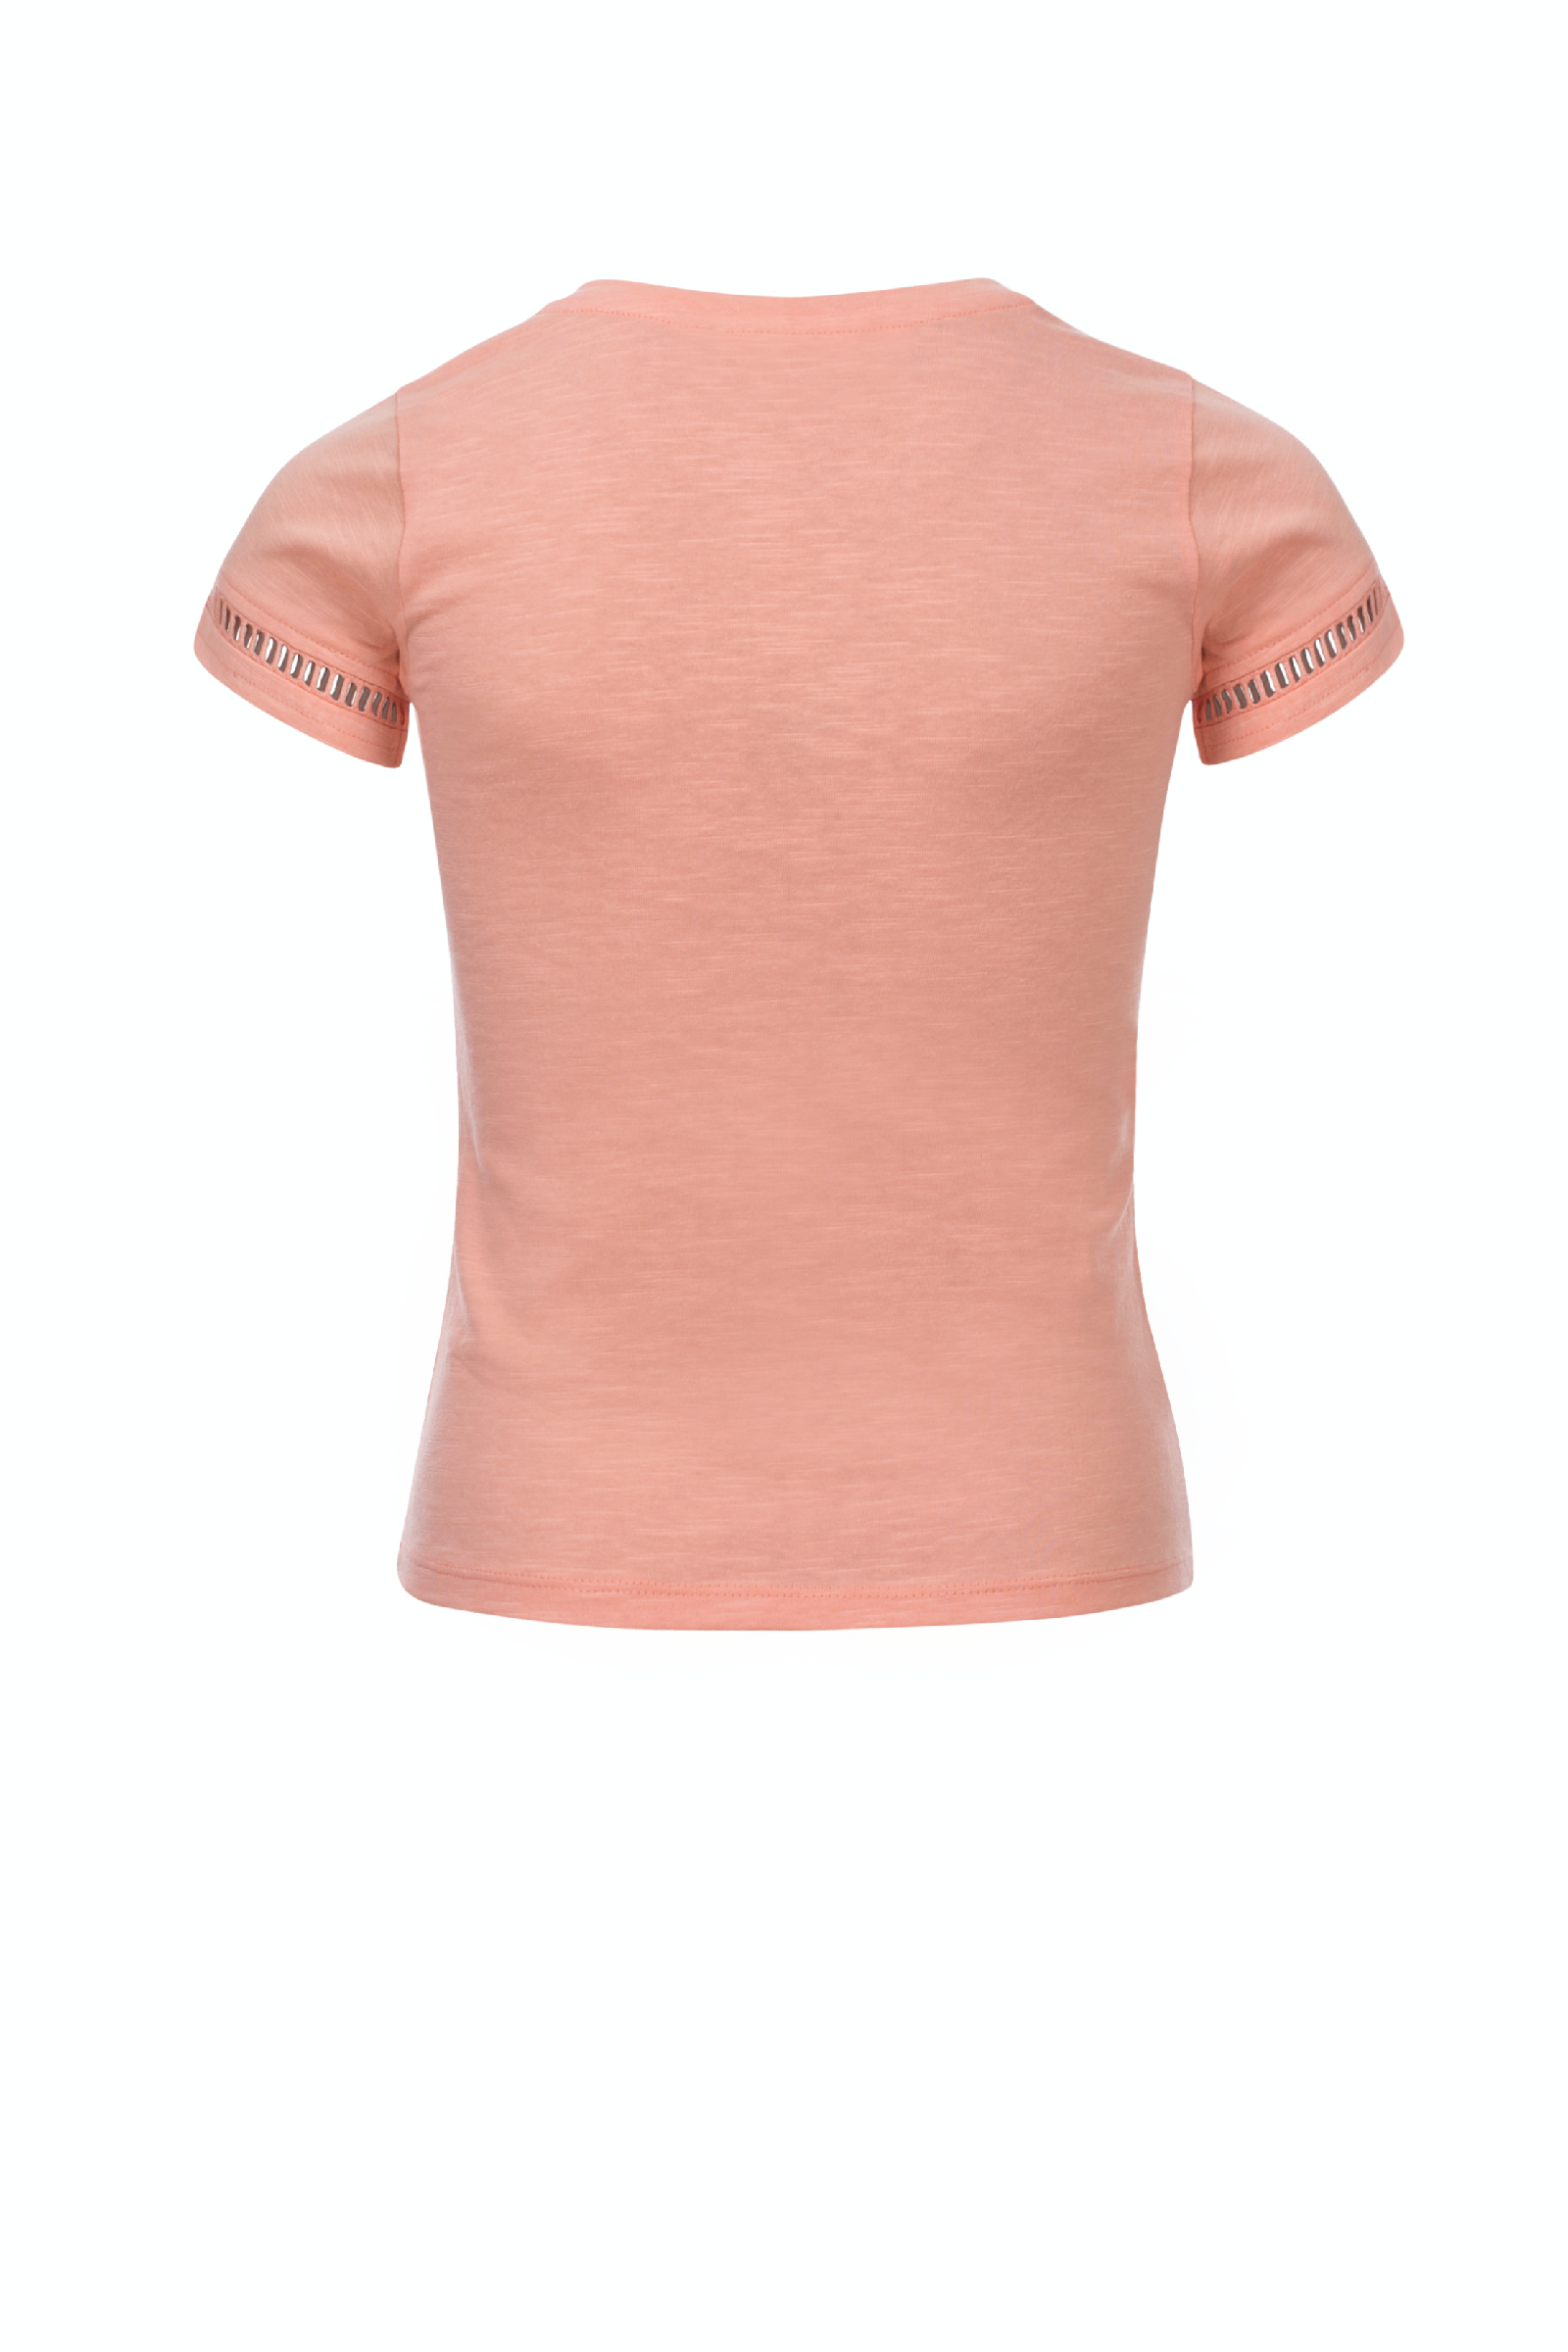 Meisjes Girls T-shirt van Looxs Revol. in de kleur Morganite in maat 164.